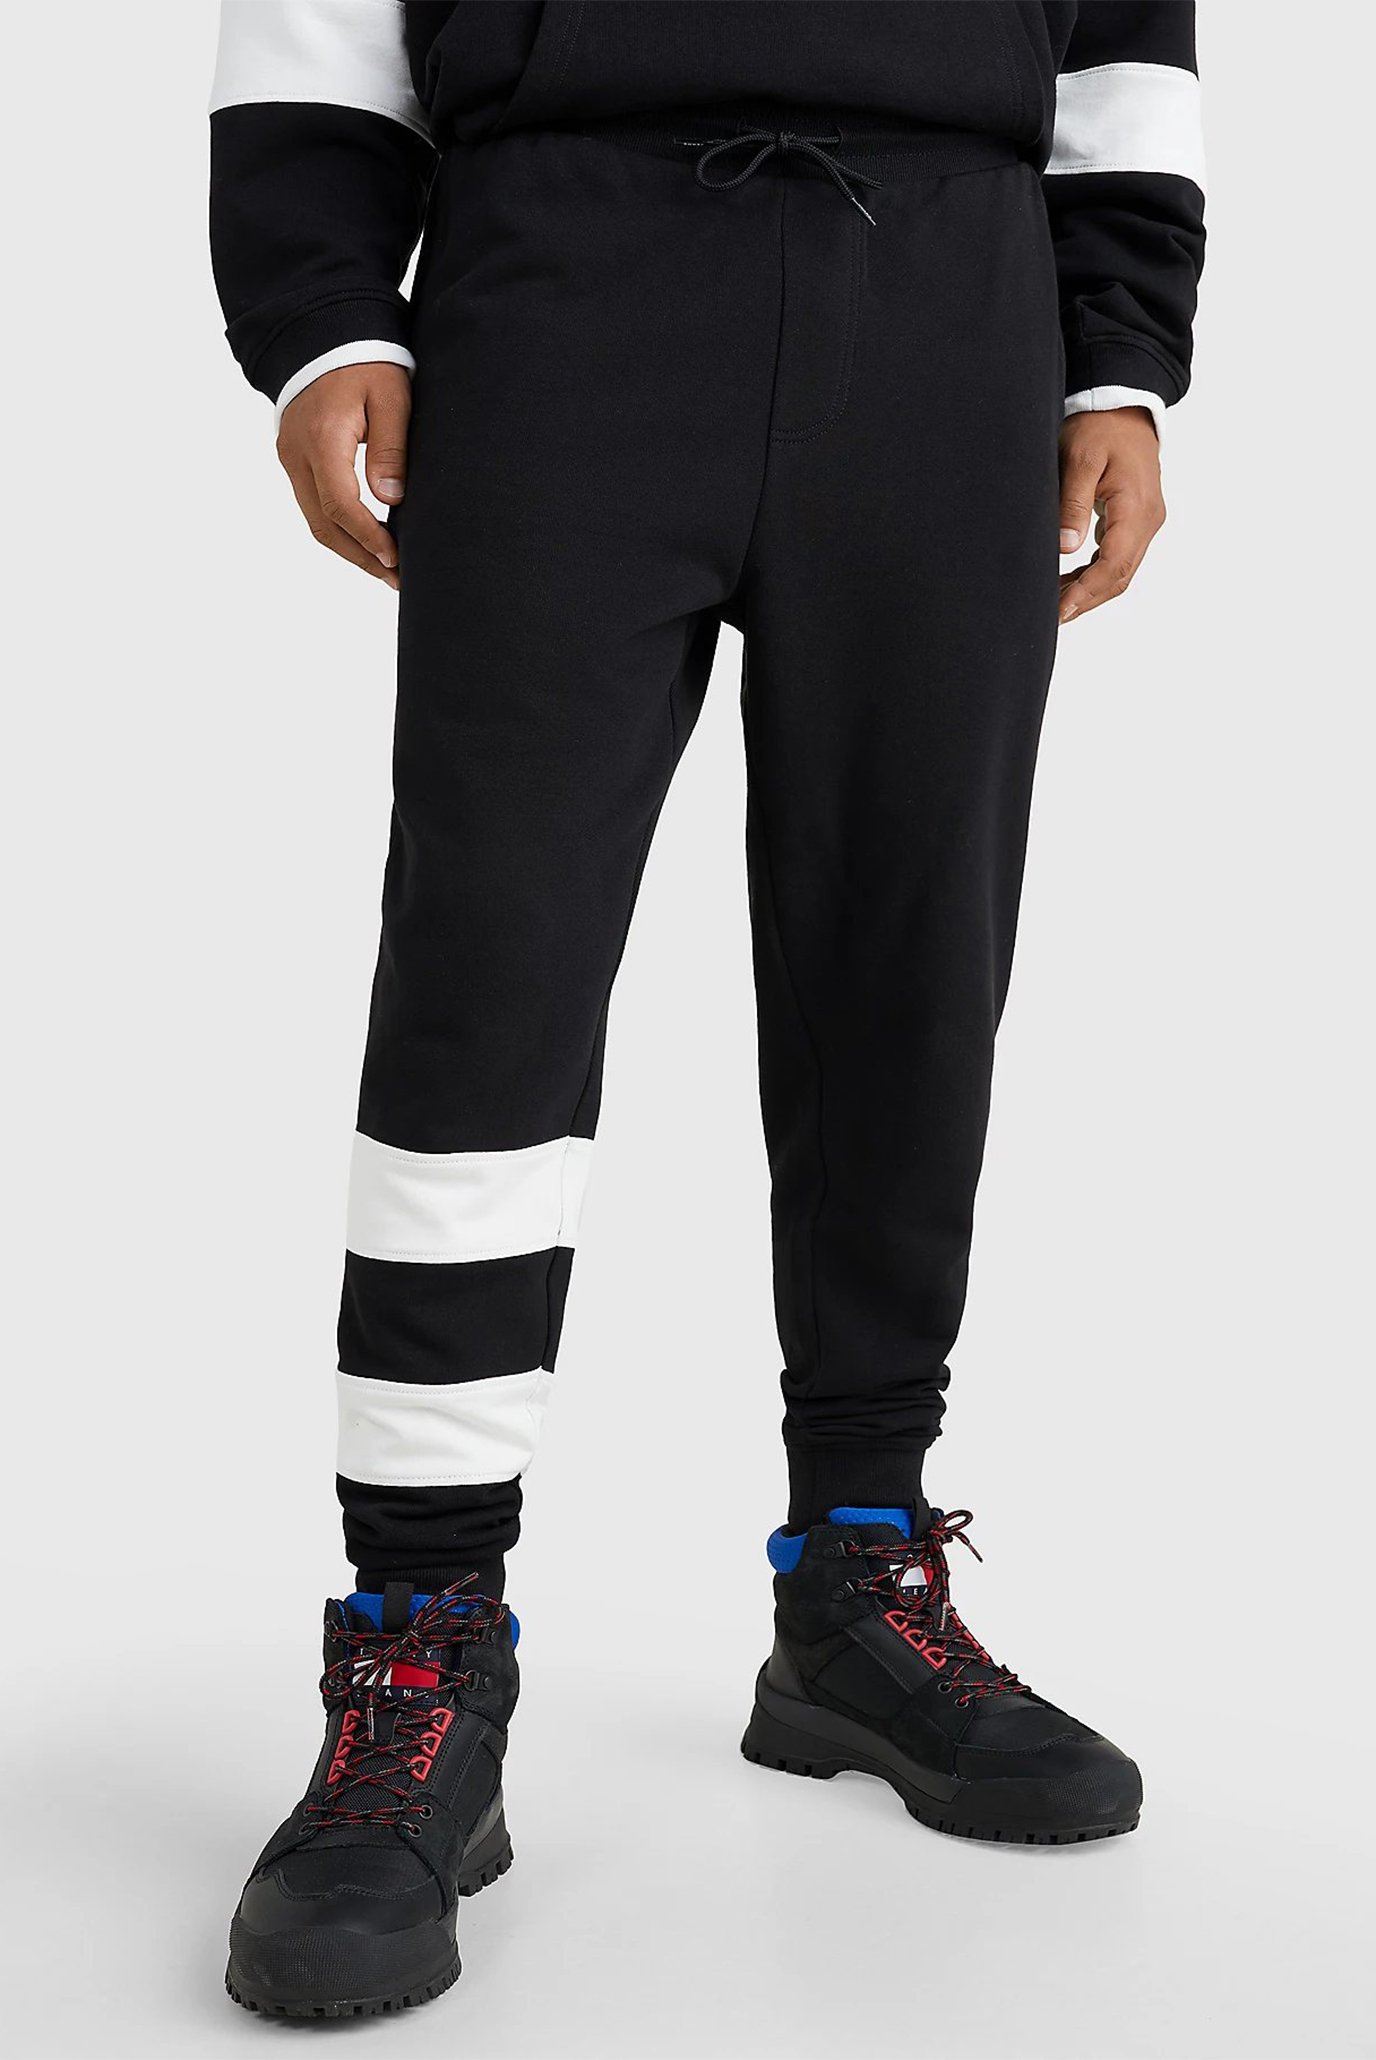 Чоловічі чорні спортивні штани TJM REG COLLEGE 85 1